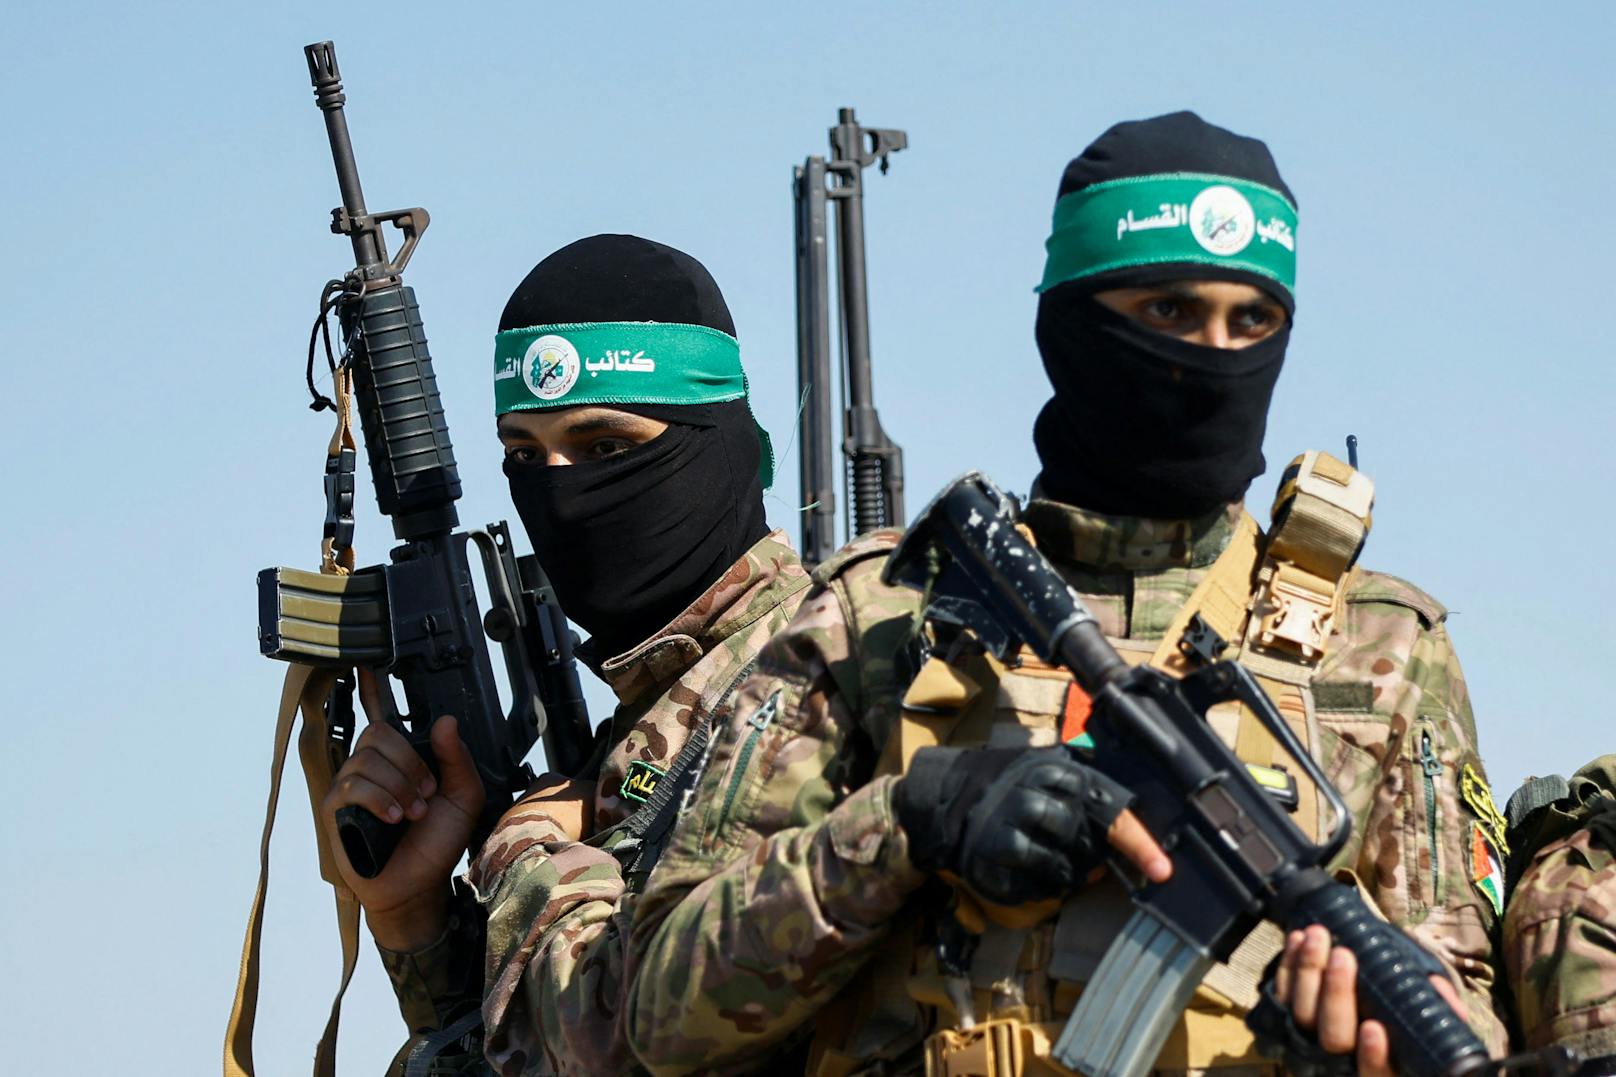 Warum die Hamas Israel ausgerechnet jetzt angreift